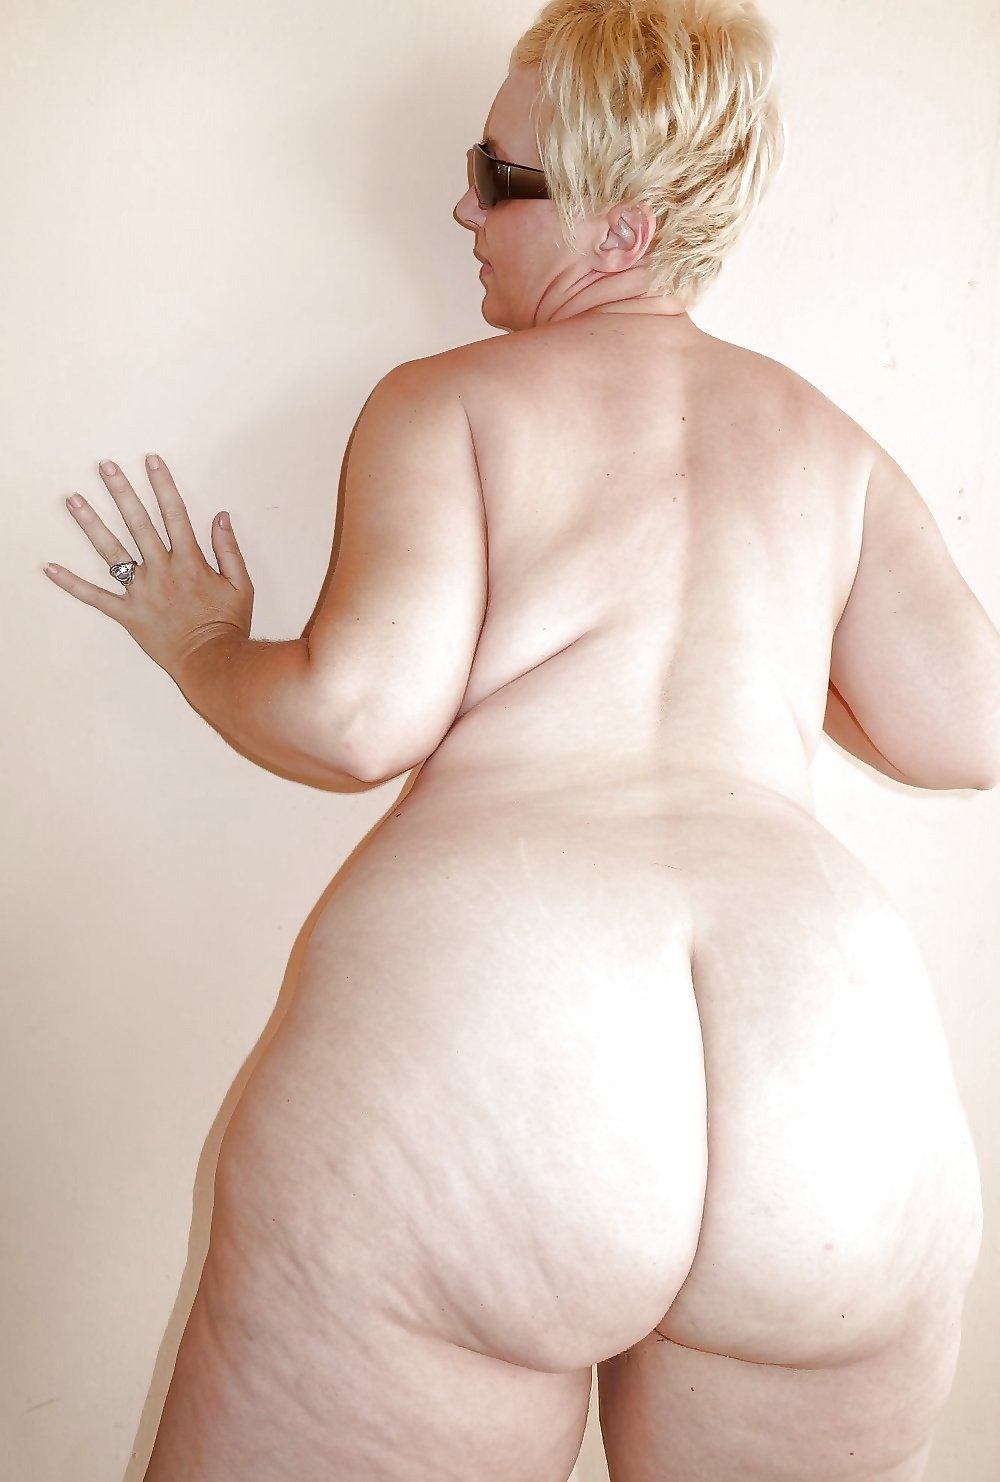 Порно широкие бедра зрелых мам сверху крупно (60 фото) - порно и фото голых на altaifish.ru